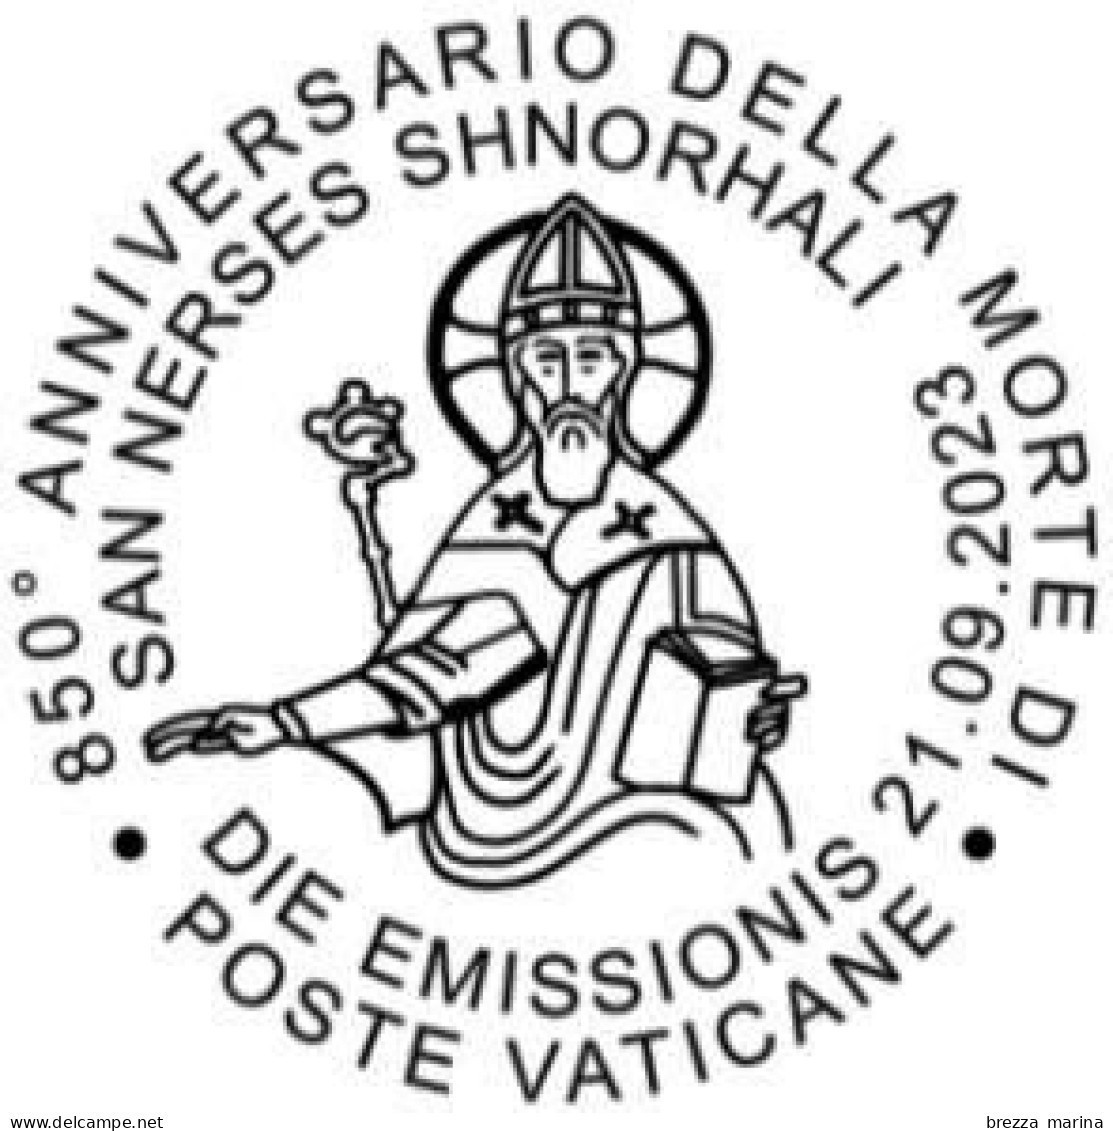 Nuovo - MNH - VATICANO - 2023 - 850º Anniversario Della Morte Di San Nerses Shnorhali – Ritratto – 1.30 - Nuovi